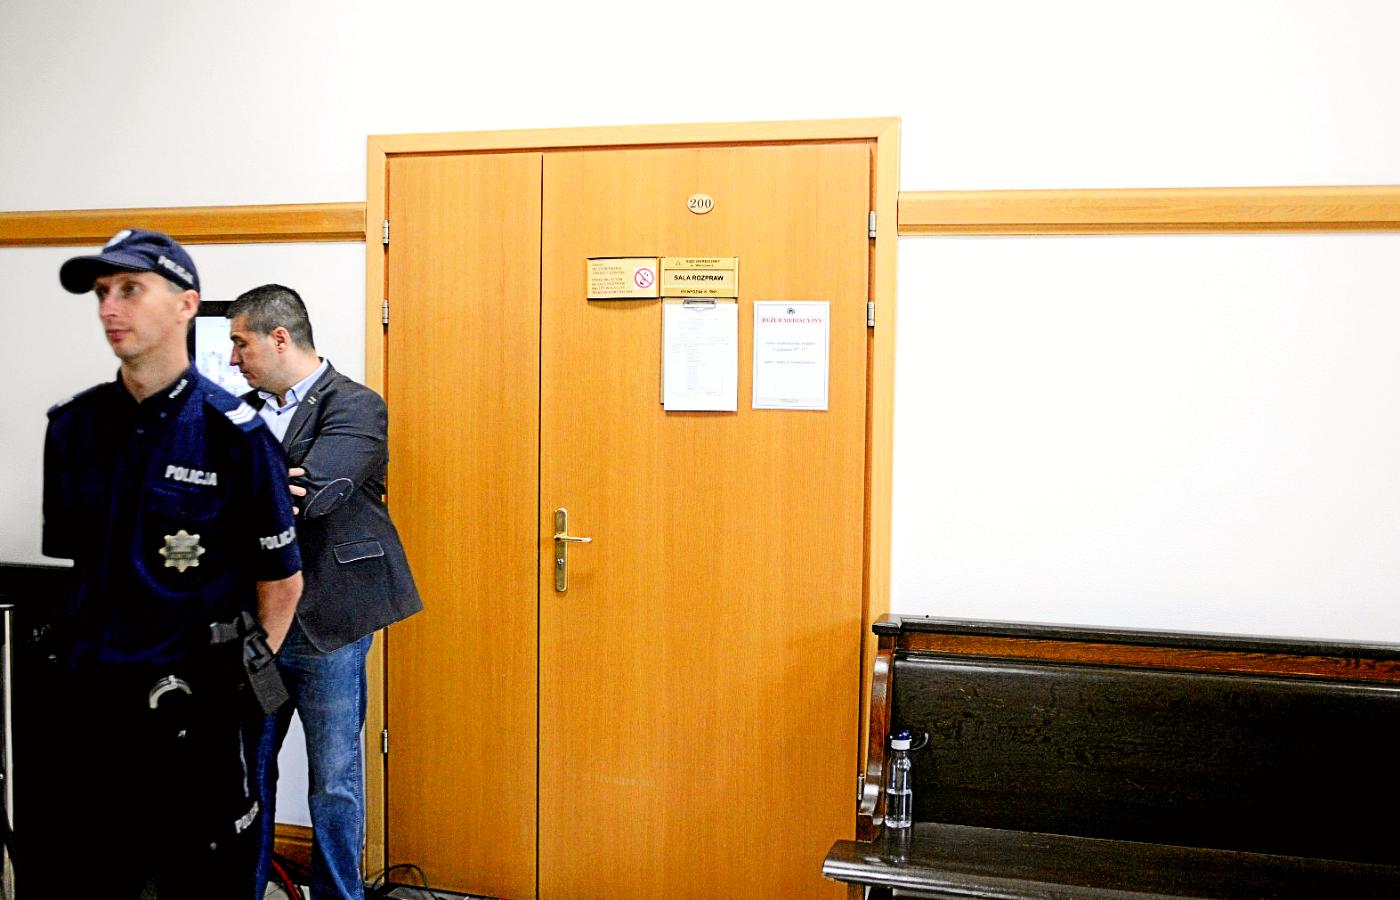 Pierwsza instancja, Sąd Okręgowy w Warszawie, kwiecień 2018 r. Proces Tomasza Arabskiego za zamkniętymi drzwiami